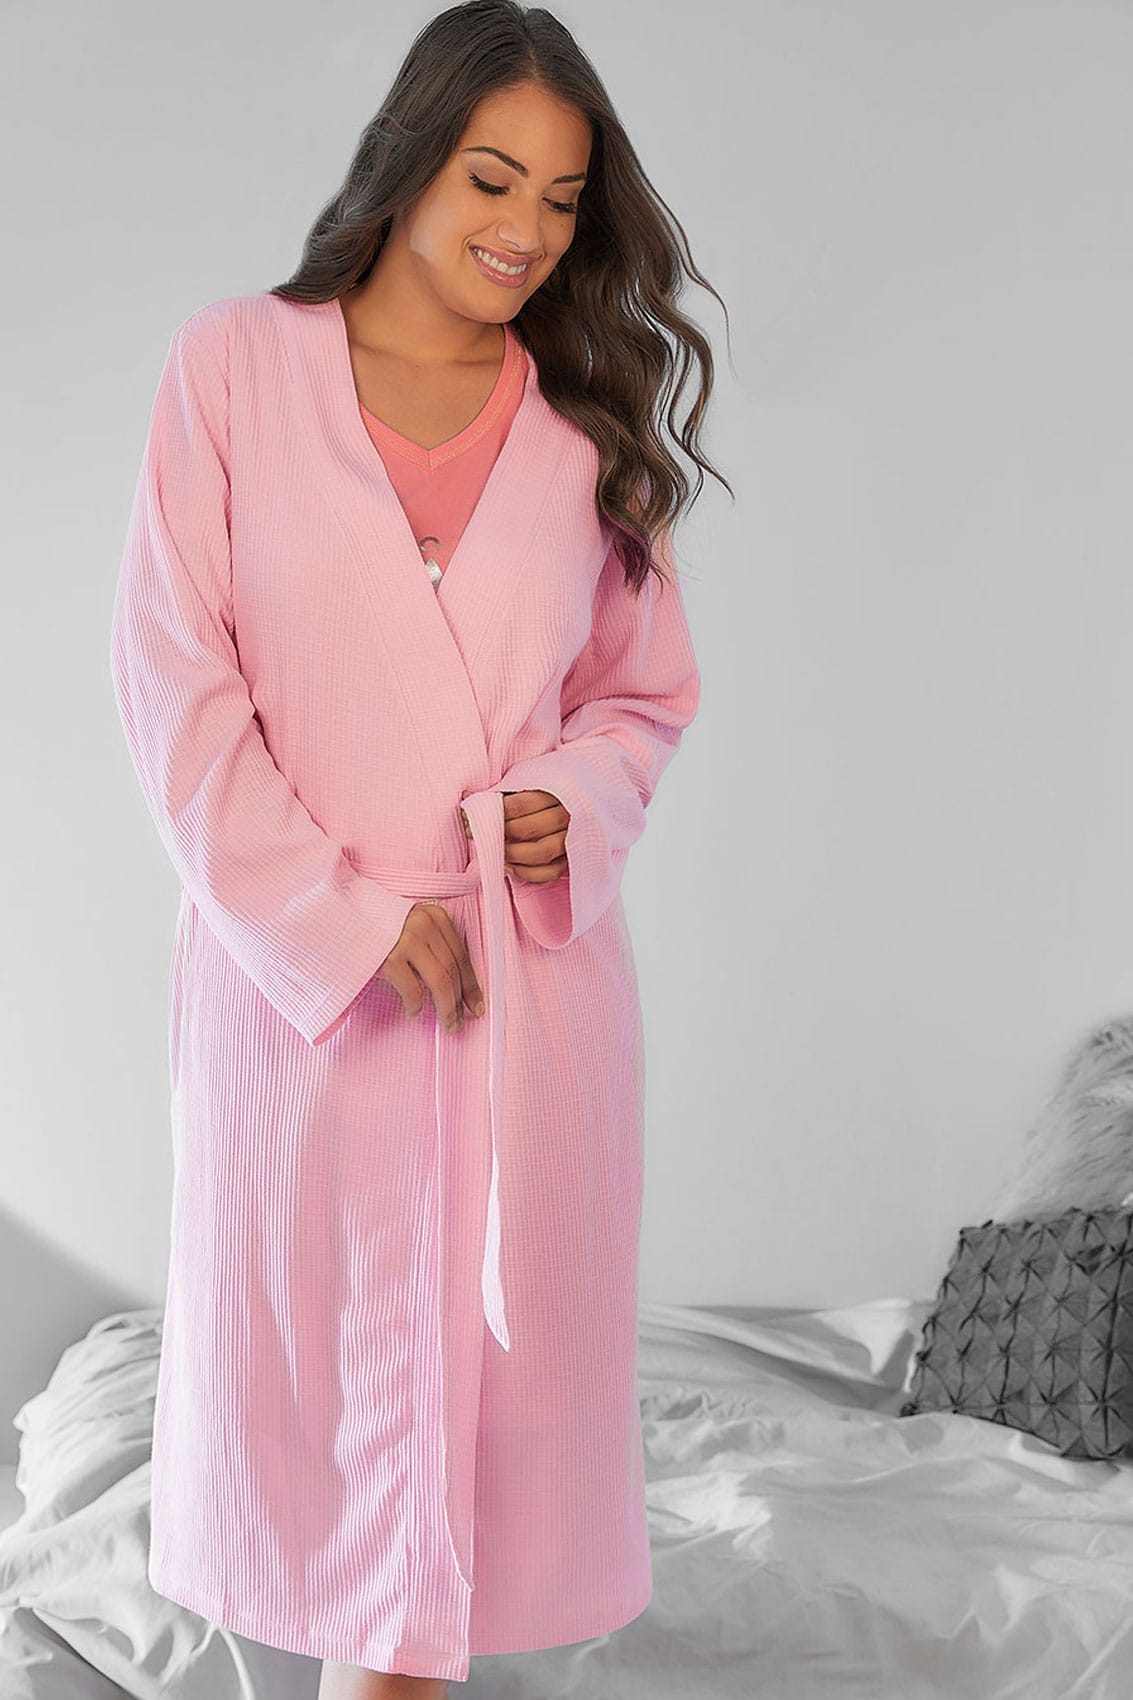 robe de chambre rose textur u00e9e en coton avec poches  taille 44  u00e0 64